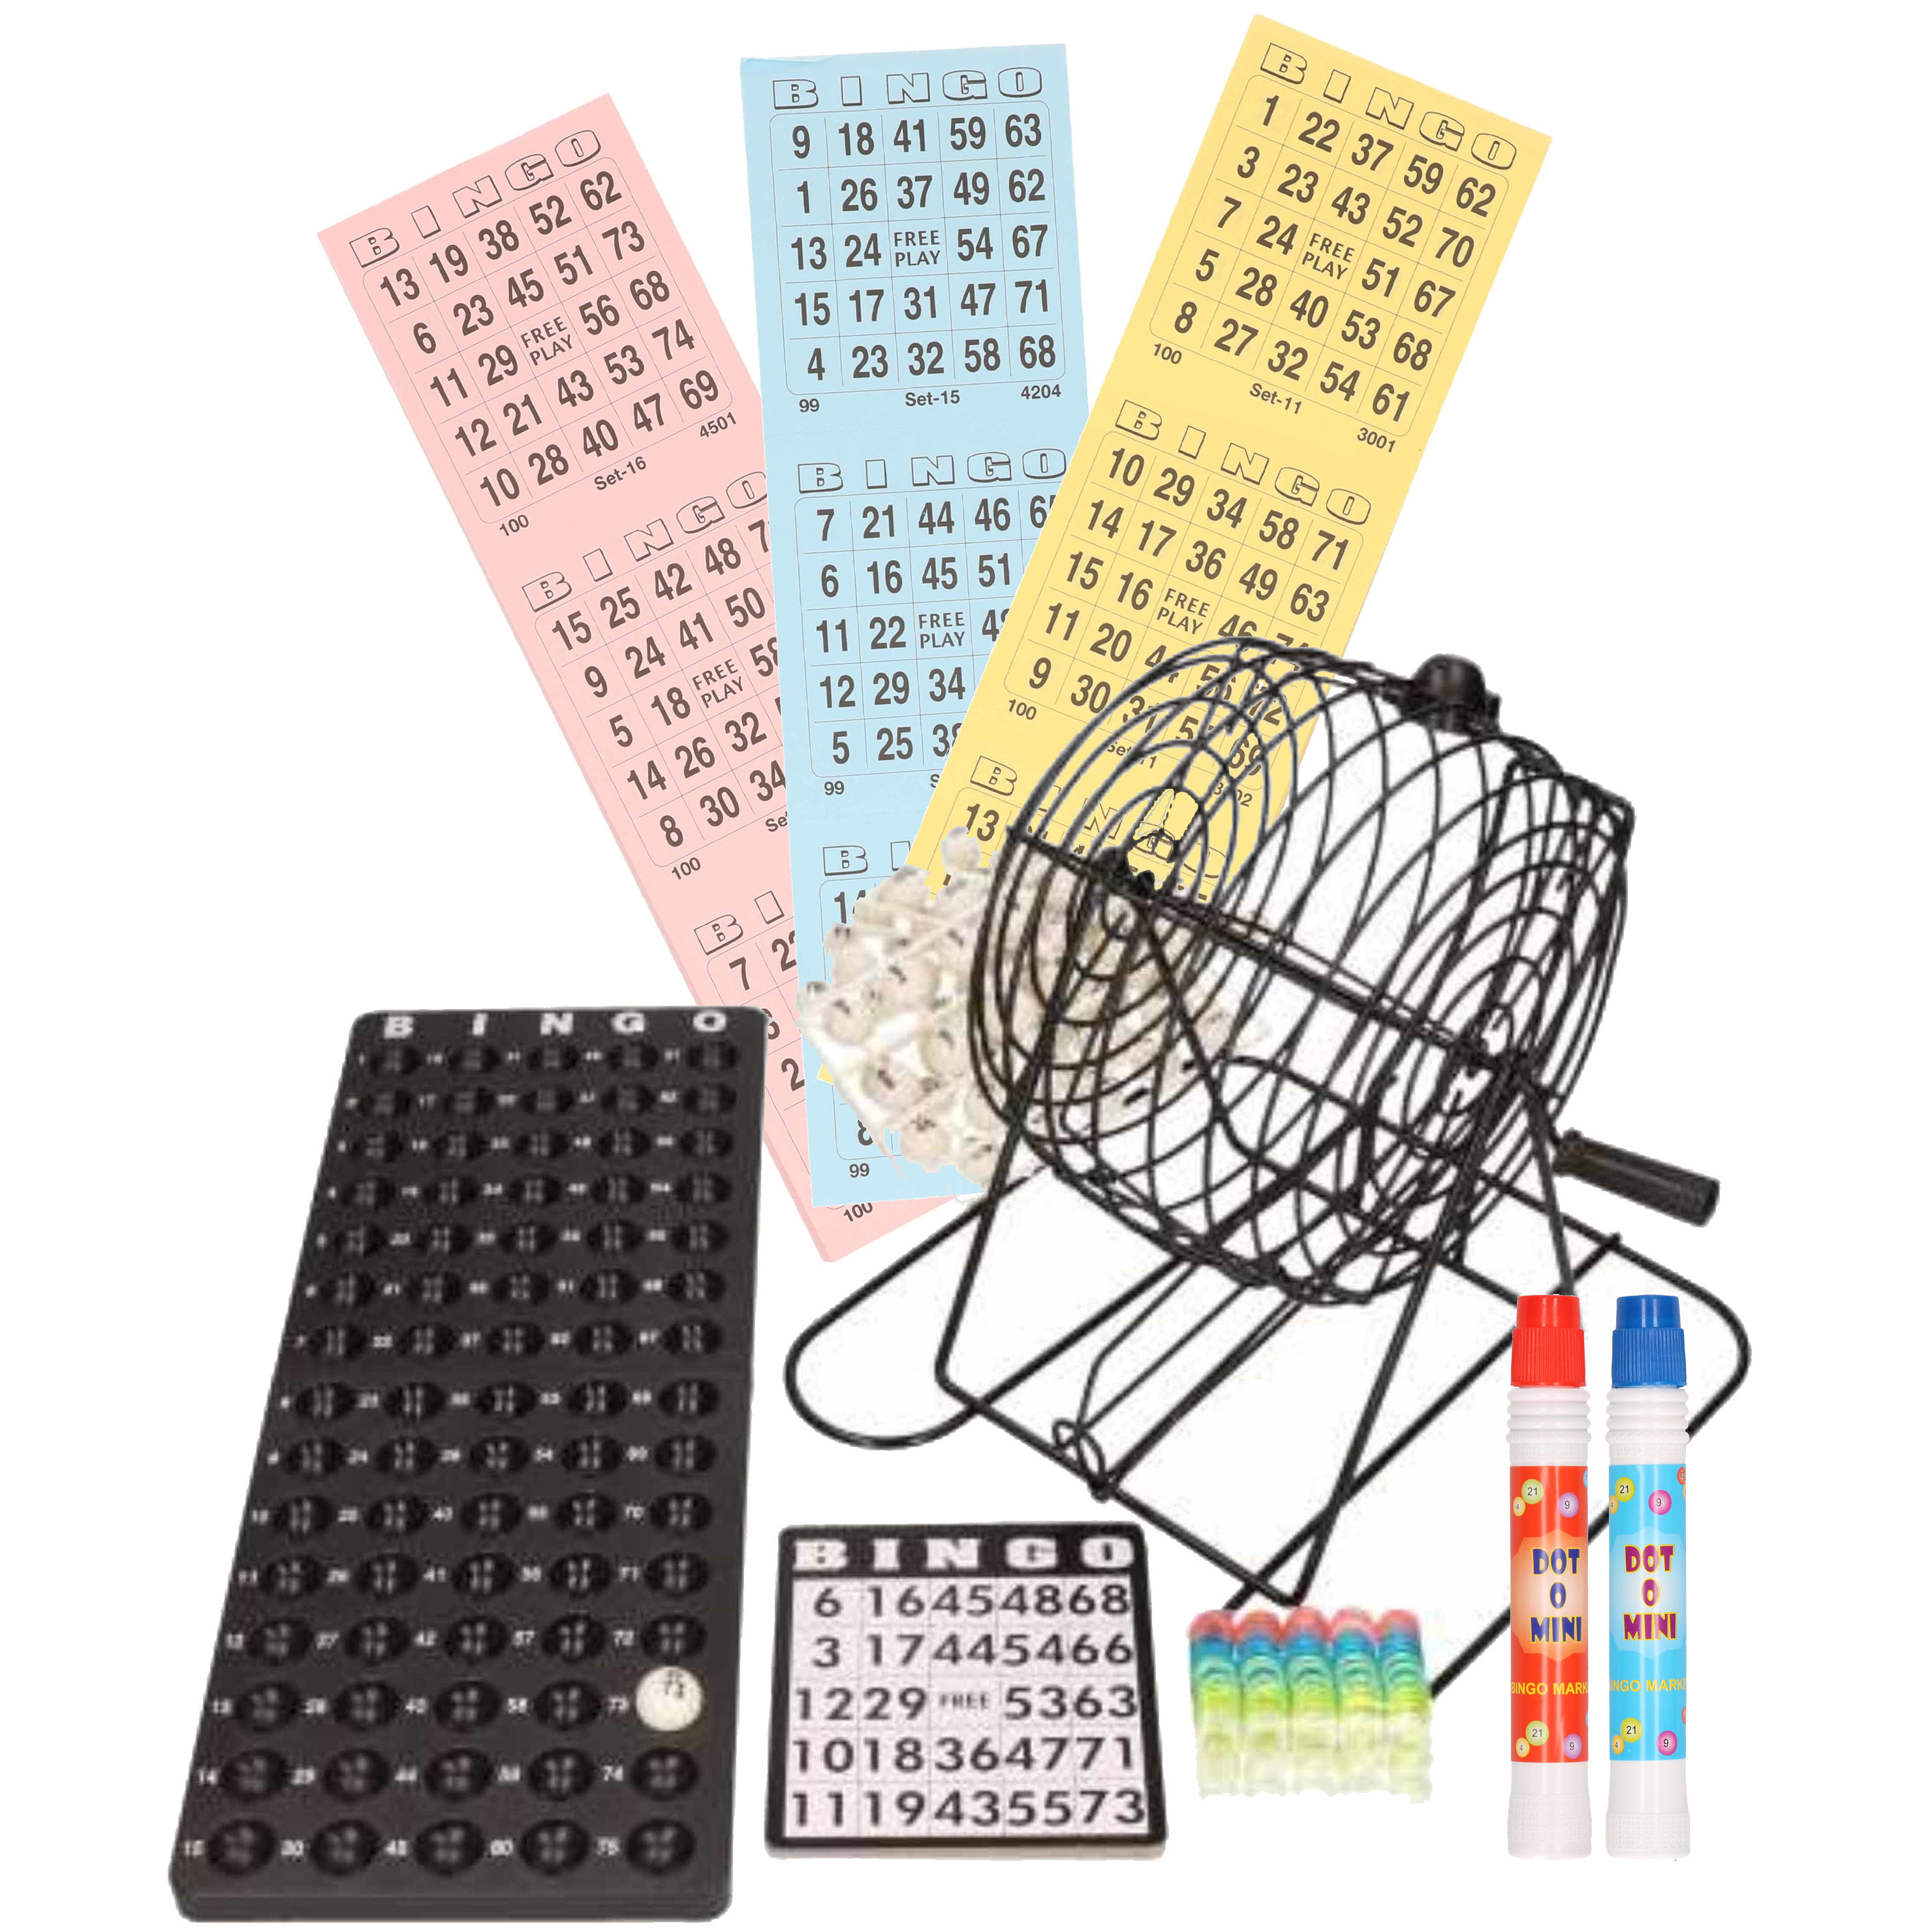 Bingospel zwart-wit 1-75 met bingomolen, 18 bingokaarten en 2 bingostiften